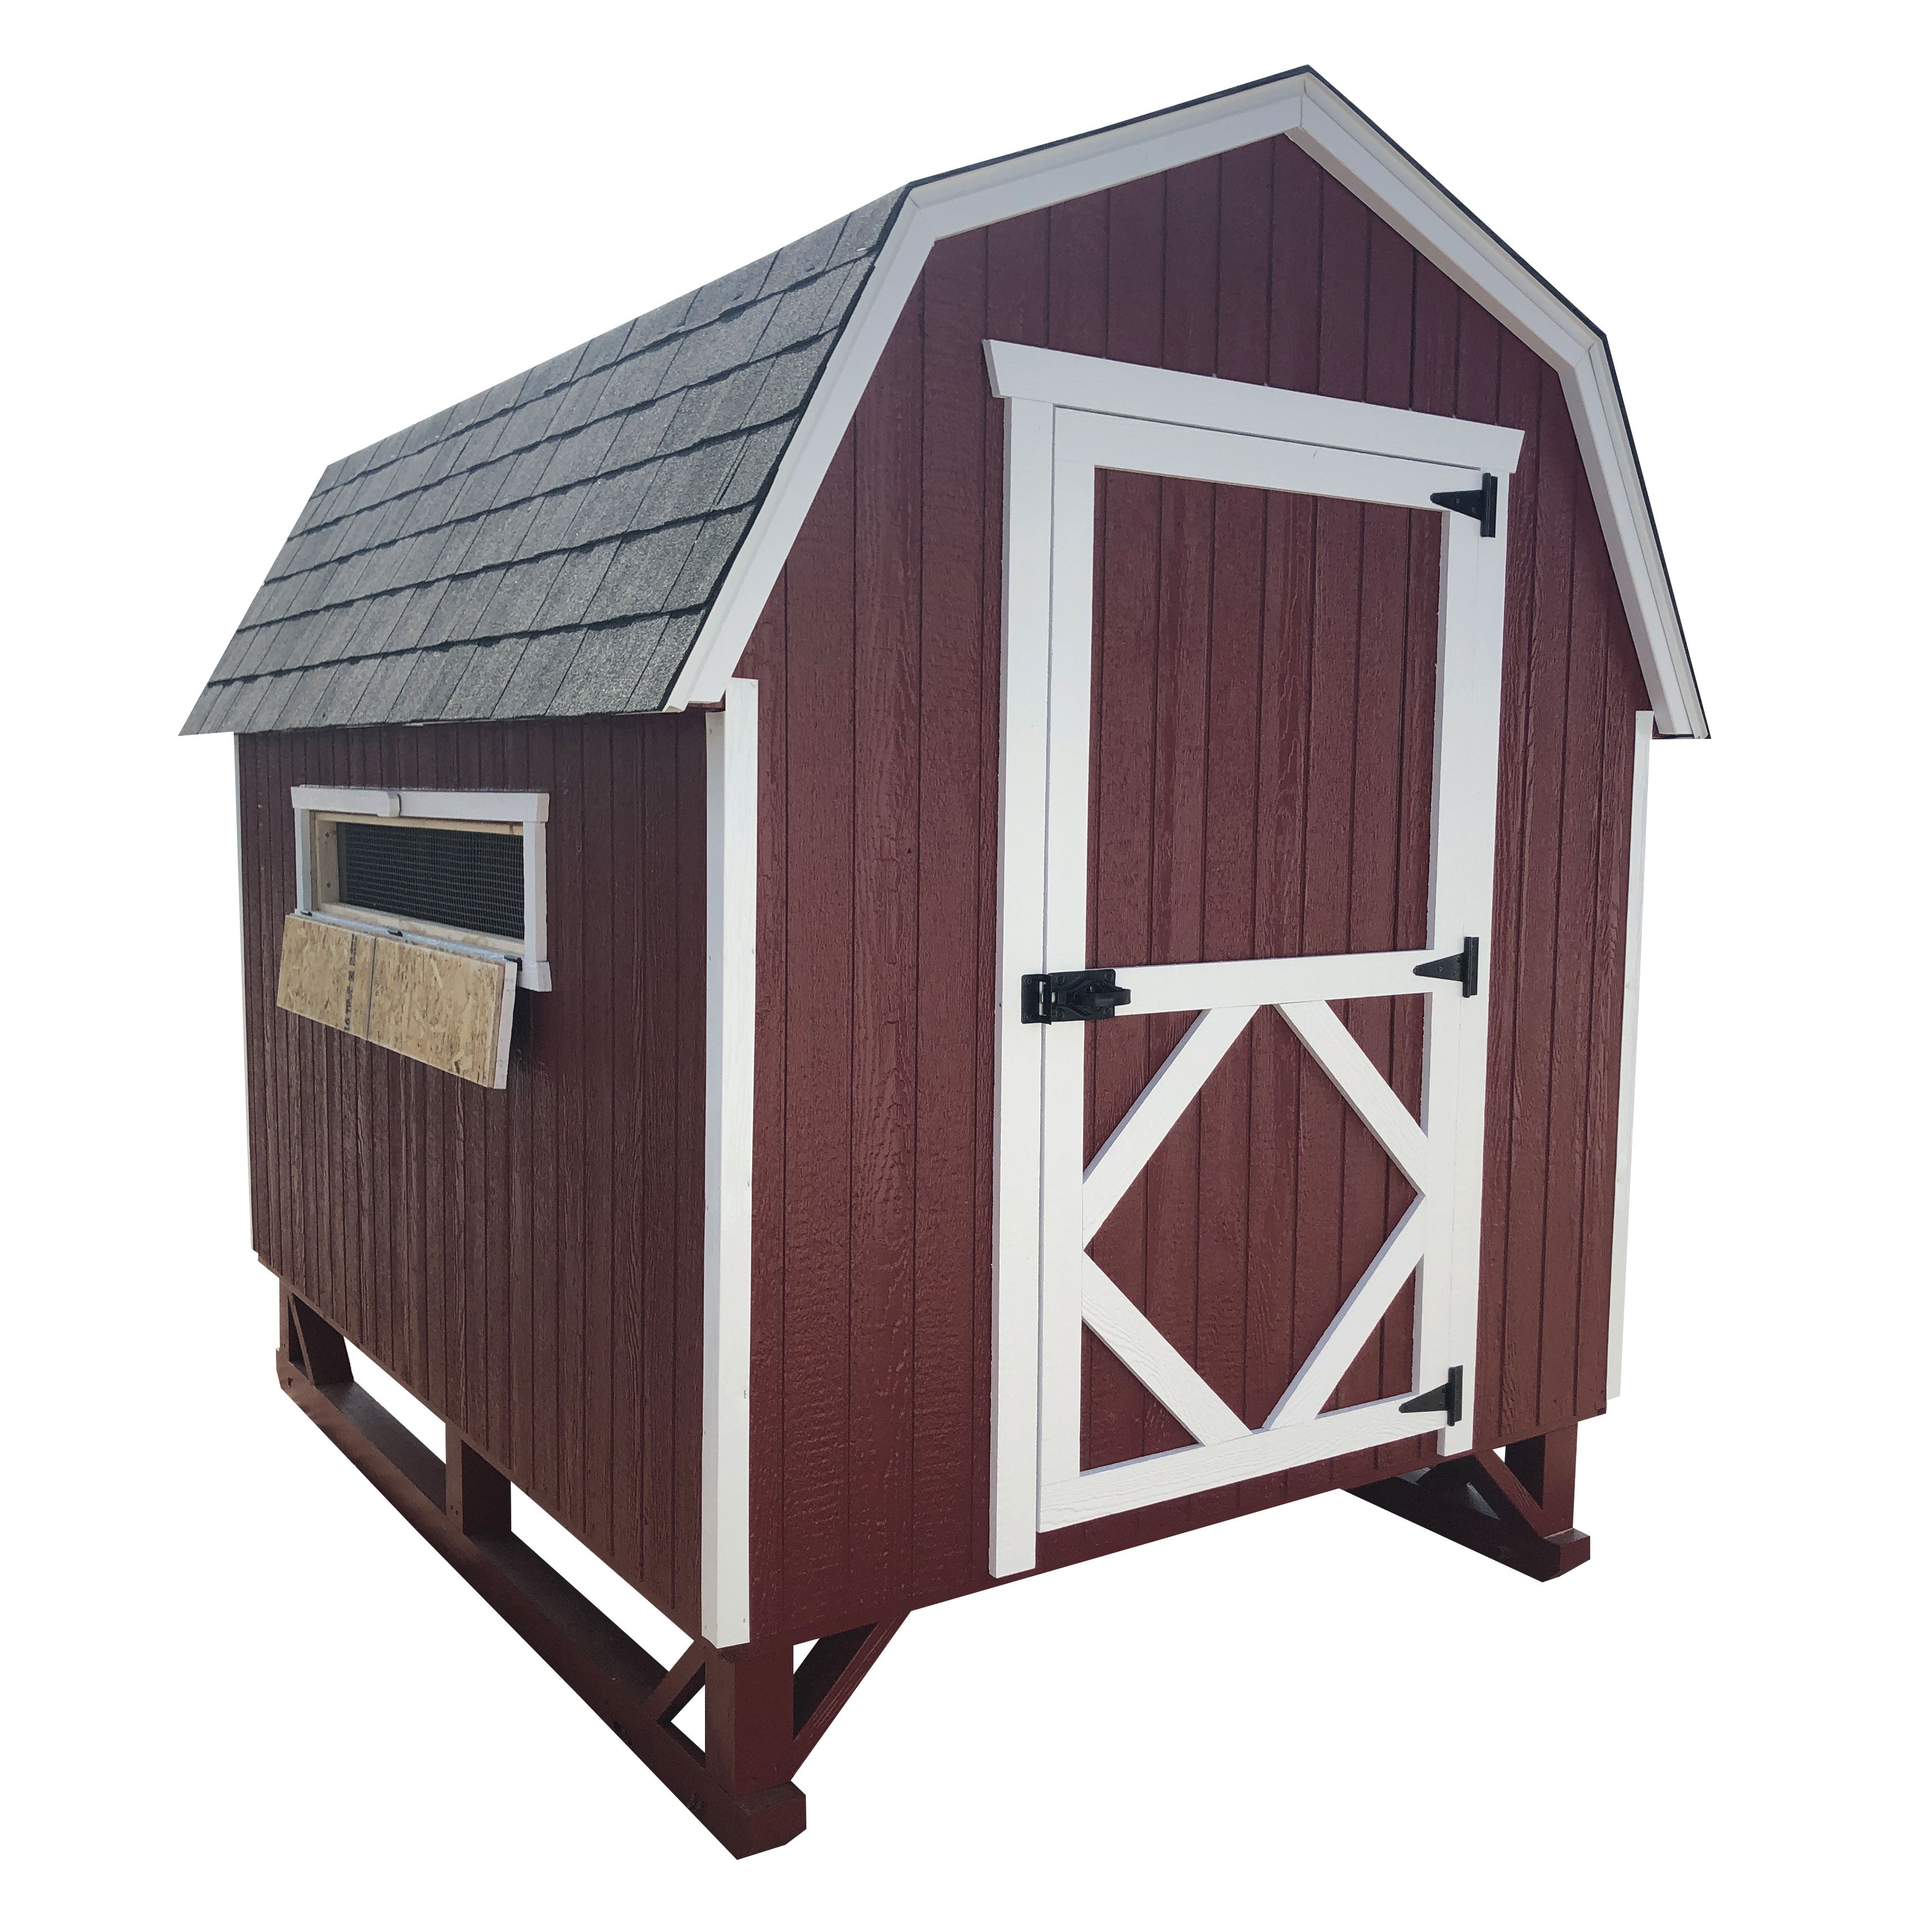 6x8 gambrel barn coop with vent open